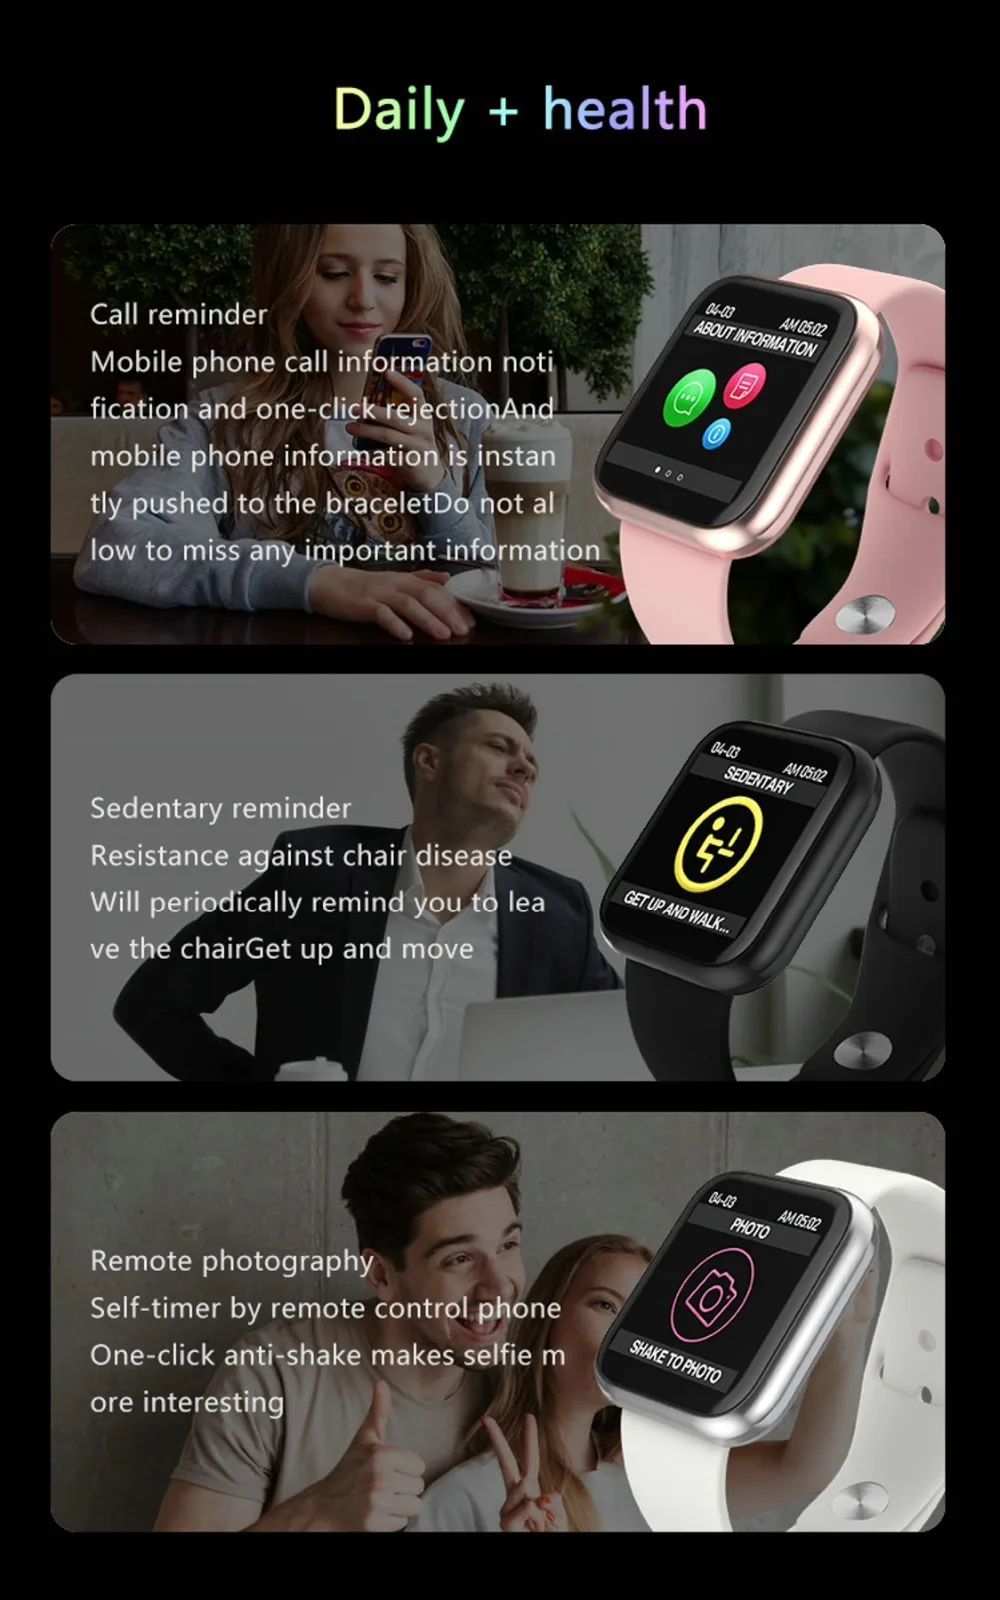 LEMADO, умные часы для мужчин и женщин, сердечный ритм, кровяное давление, кислородный шагомер, напоминание, умные часы для Android, Apple Phone